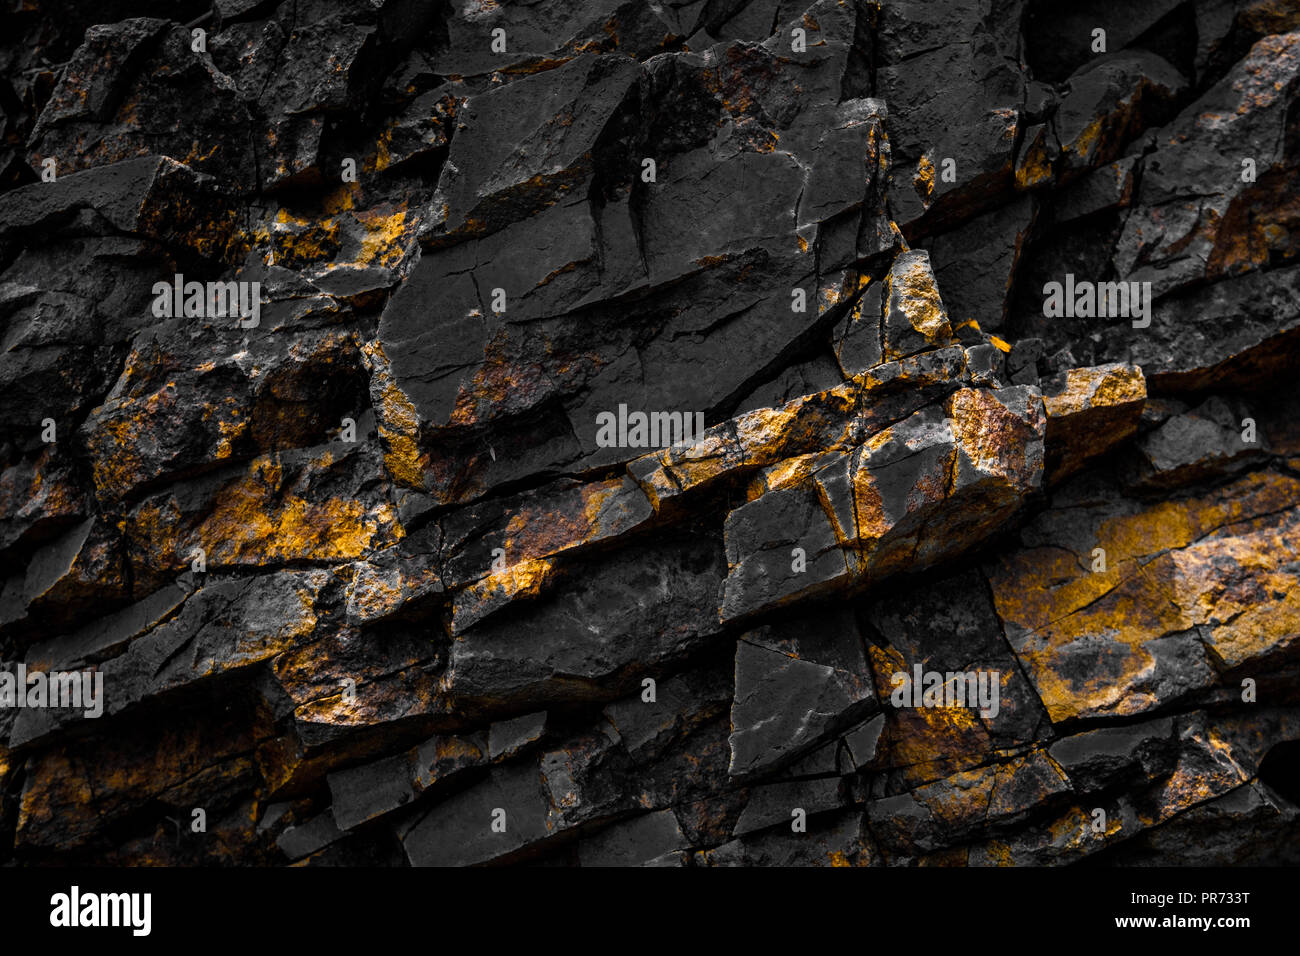 Black Rock sfondo con golden / colore giallo - Foto Stock